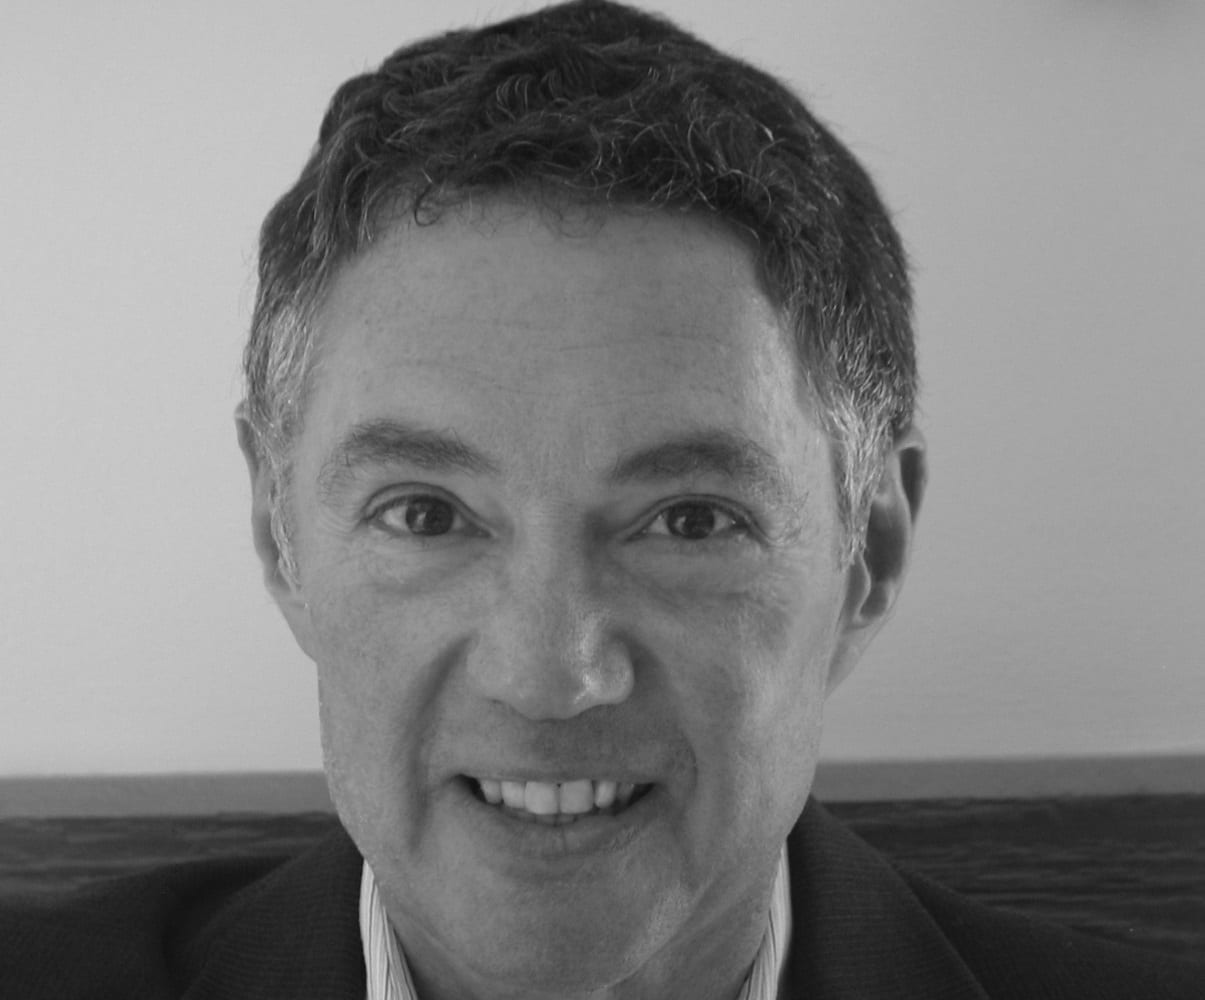 Stuart Selip delivers technology-focused digital marketing